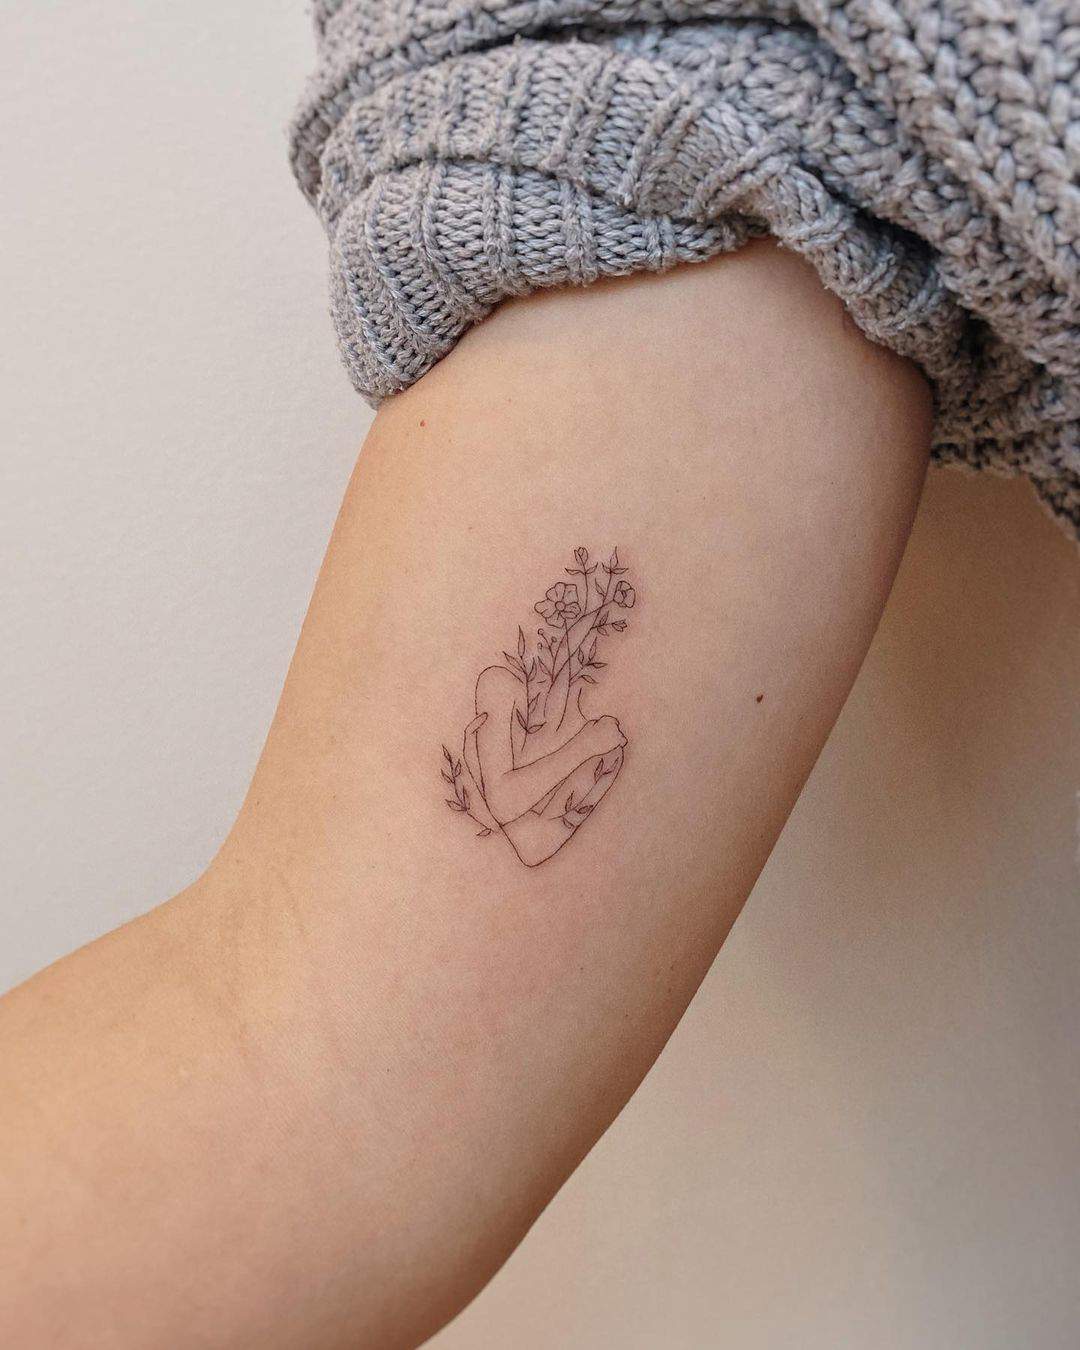 Tatuaje original de abrazo y flores